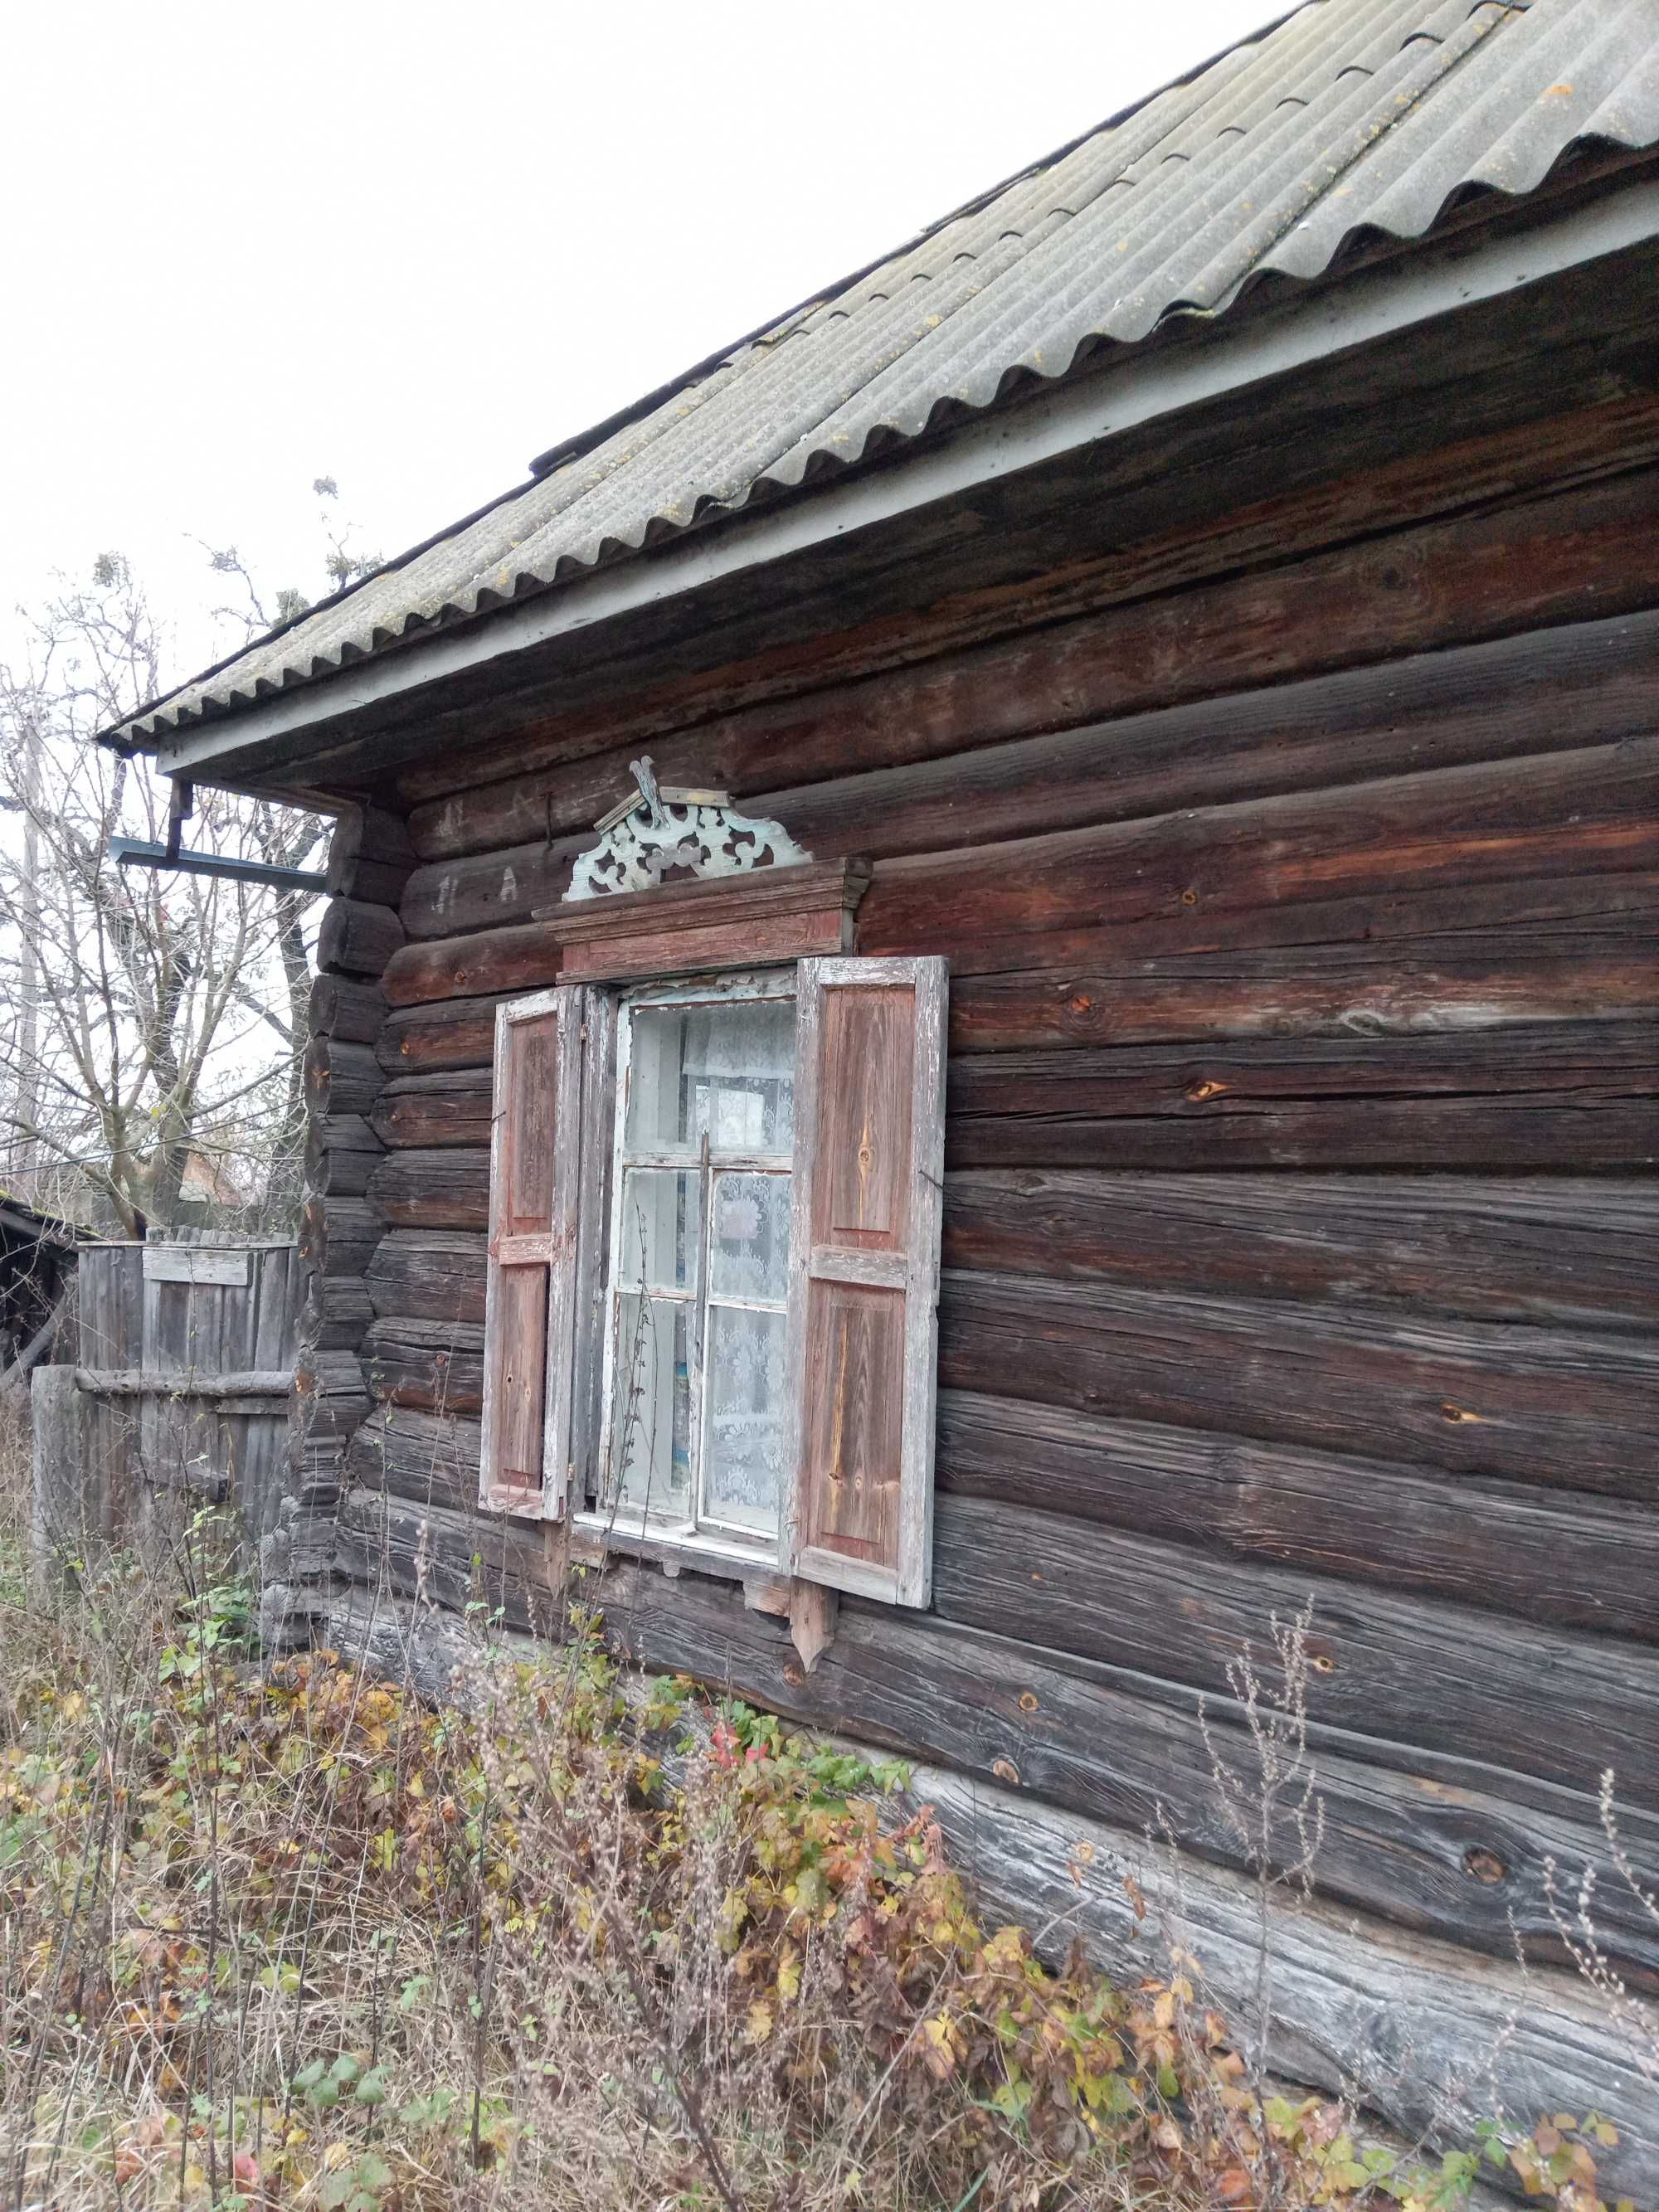 Продается дом в селе Мнев.